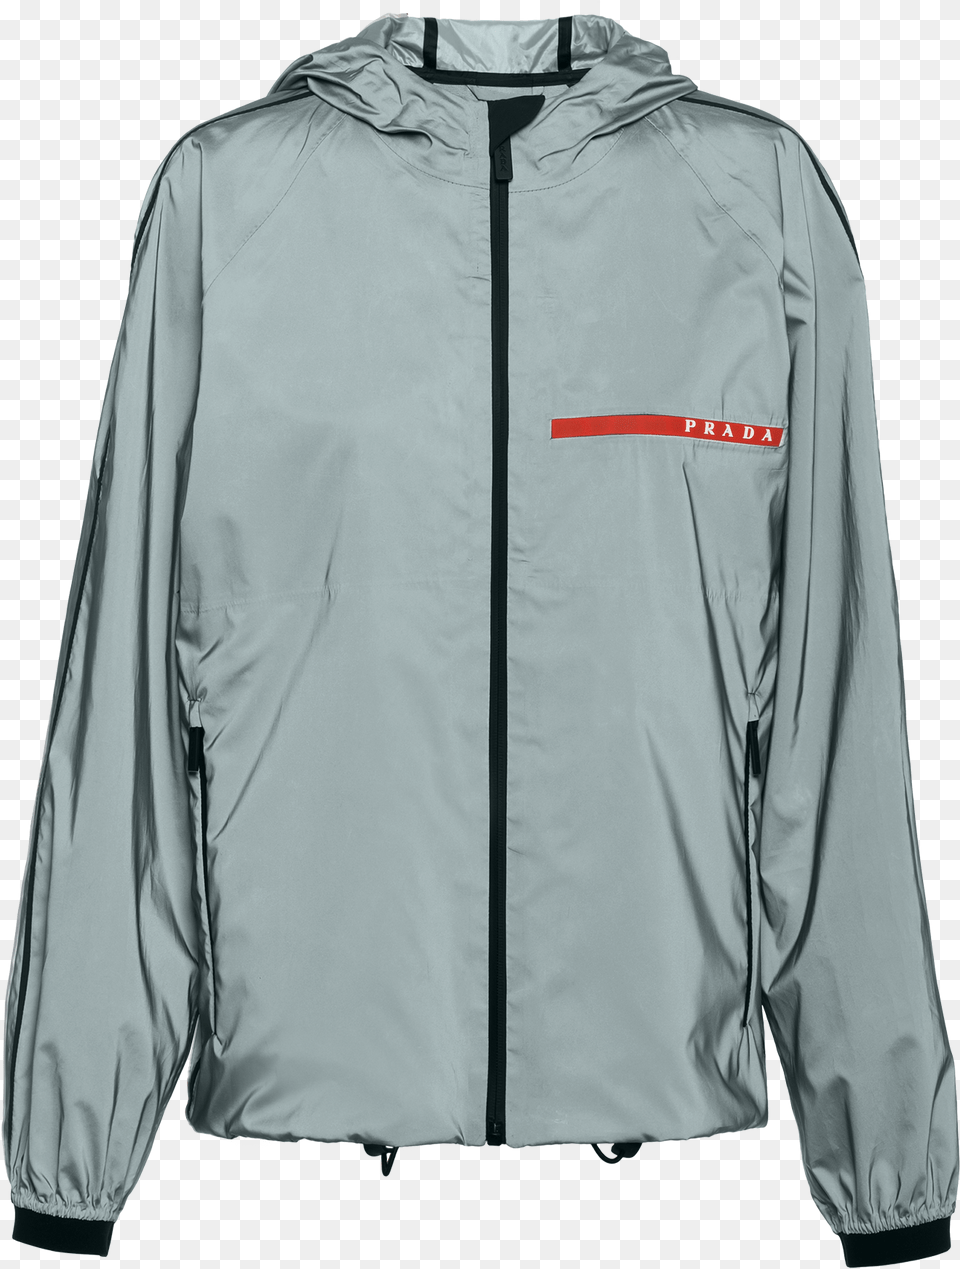 Prada Reflective Jacket, Clothing, Coat, Shirt Png Image